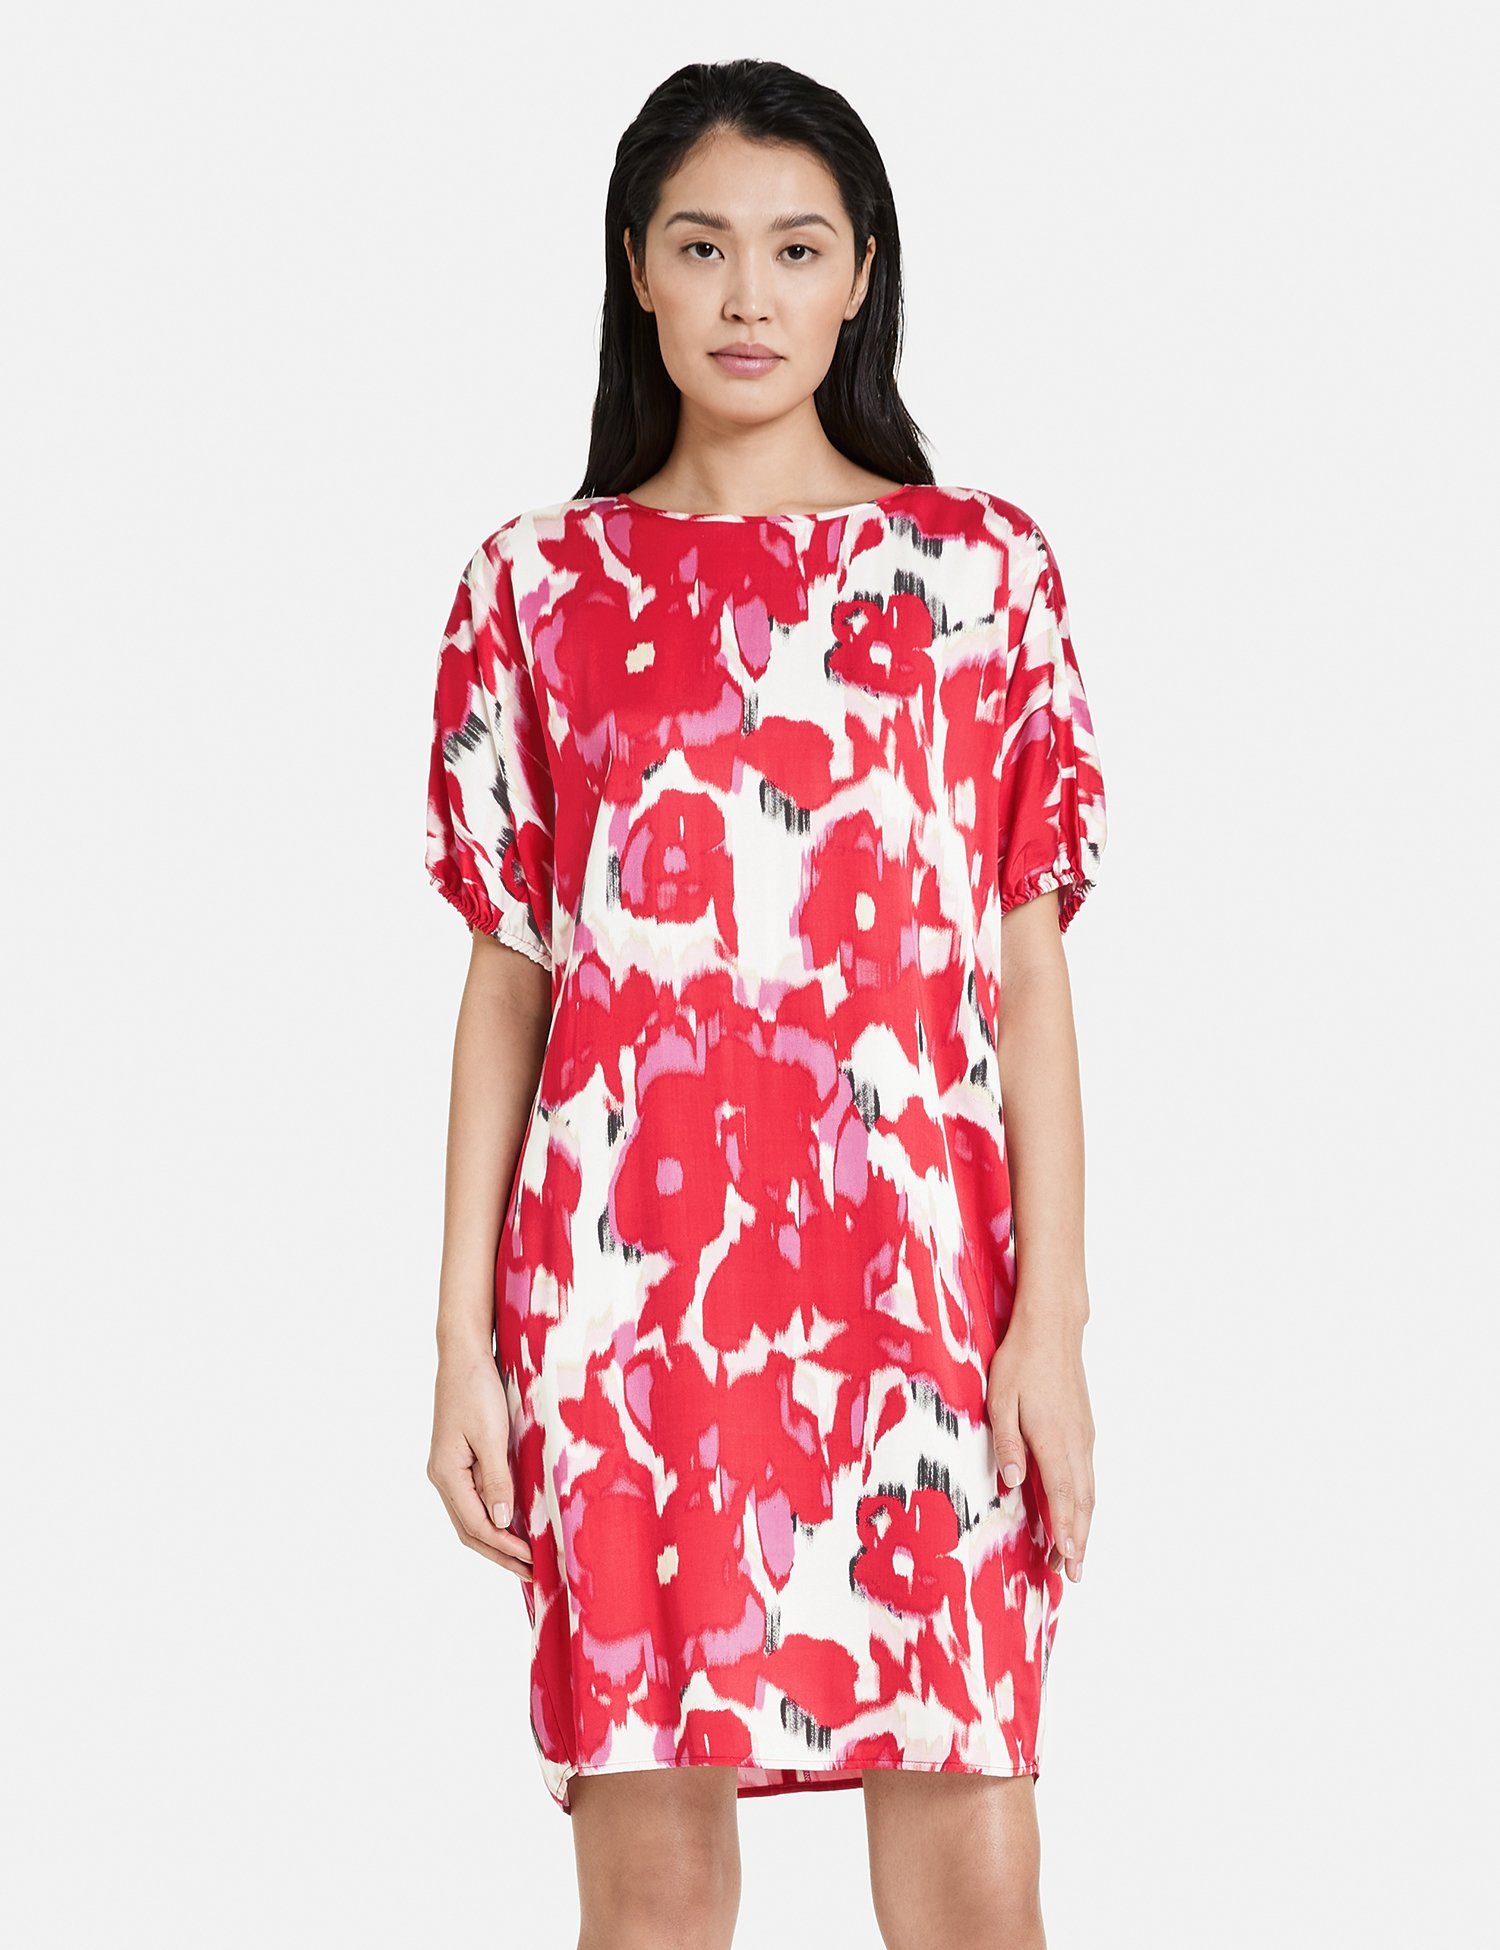 Zum günstigen Preis erhalten! Taifun Minikleid Kleid Viskose aus satinierter